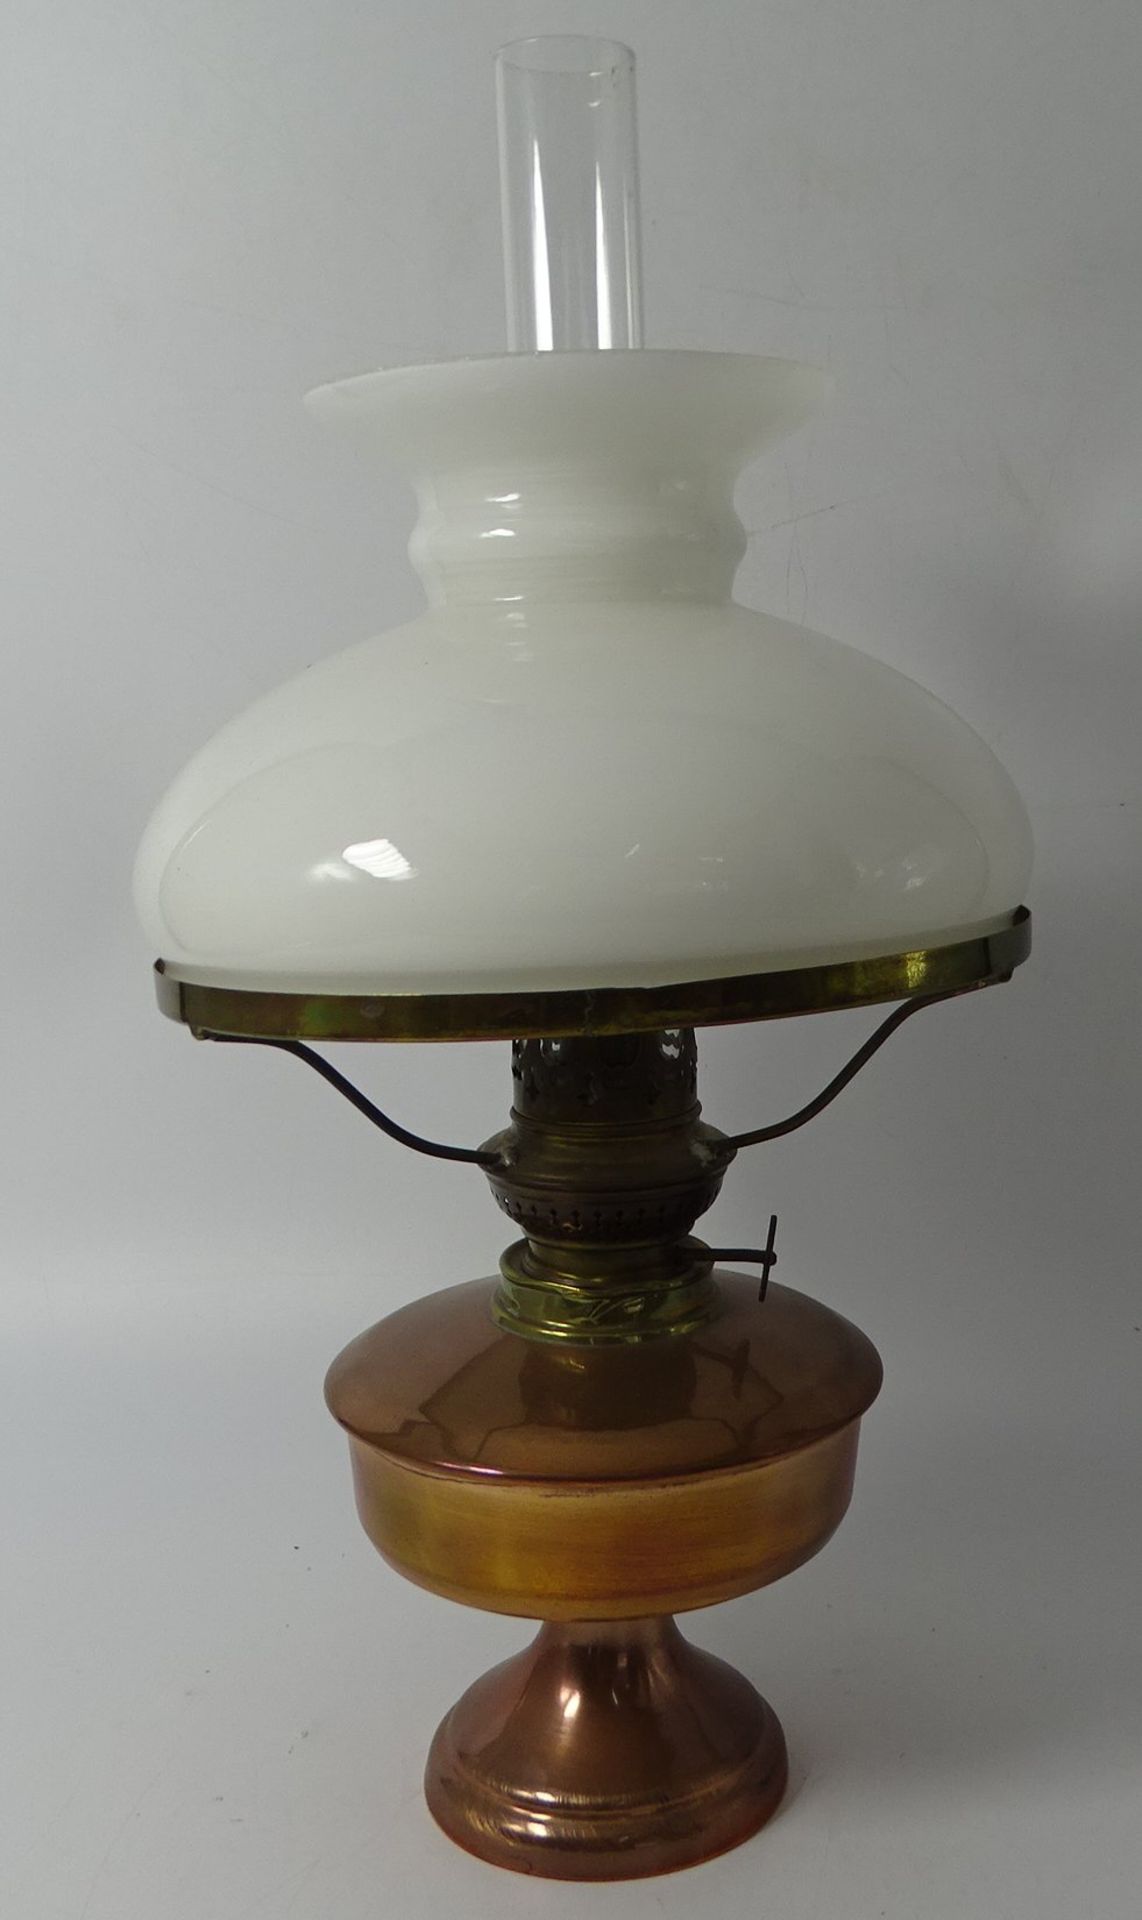 kl. Petroleum-Lampe, neuzeitlich, Kupferstand, H-33 cm